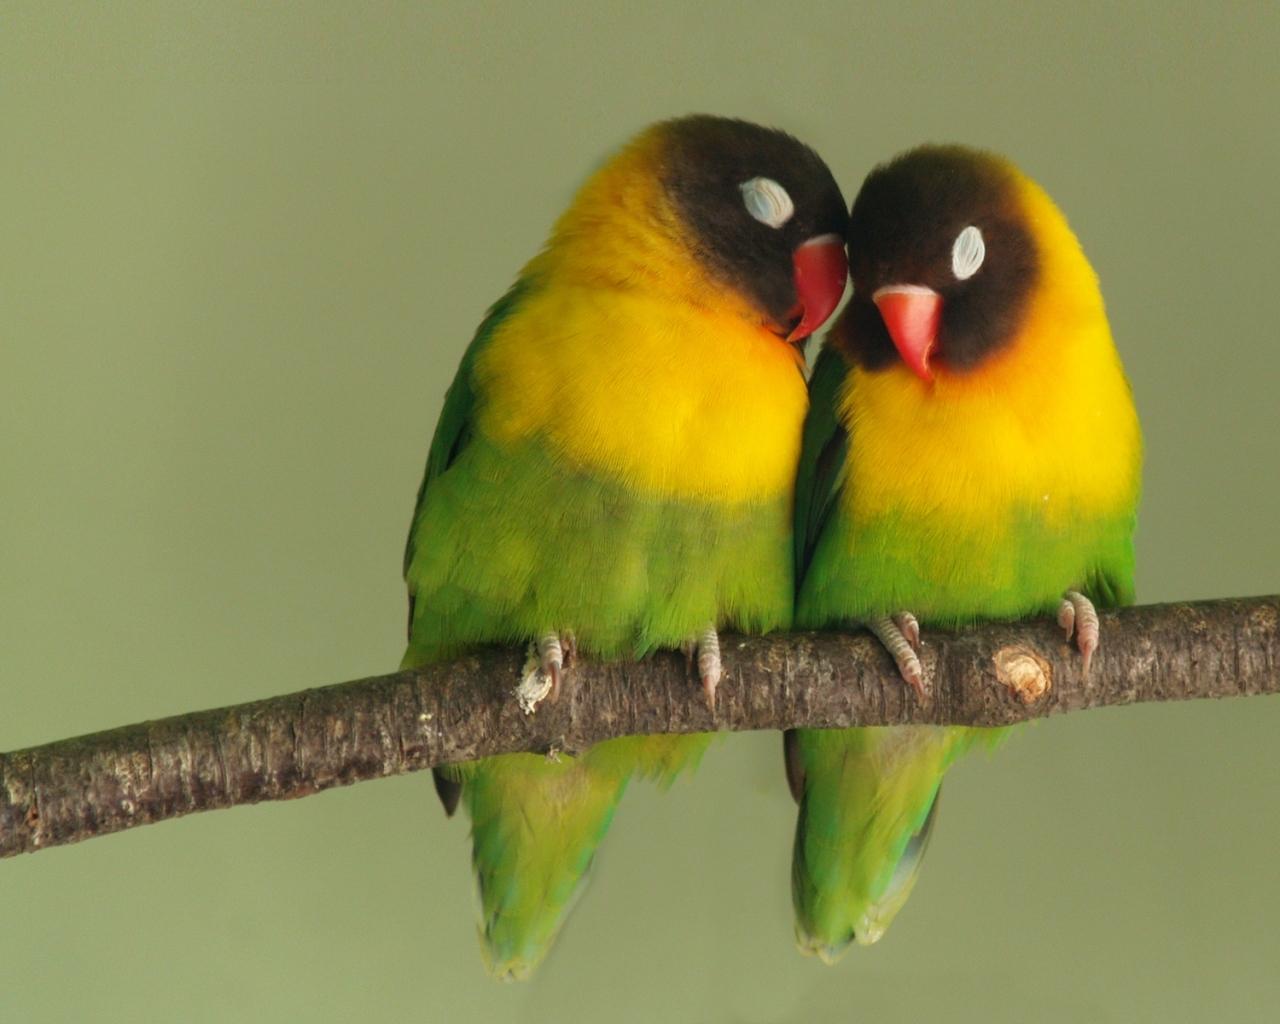 PCwallpaperz.com: Cute Parrots